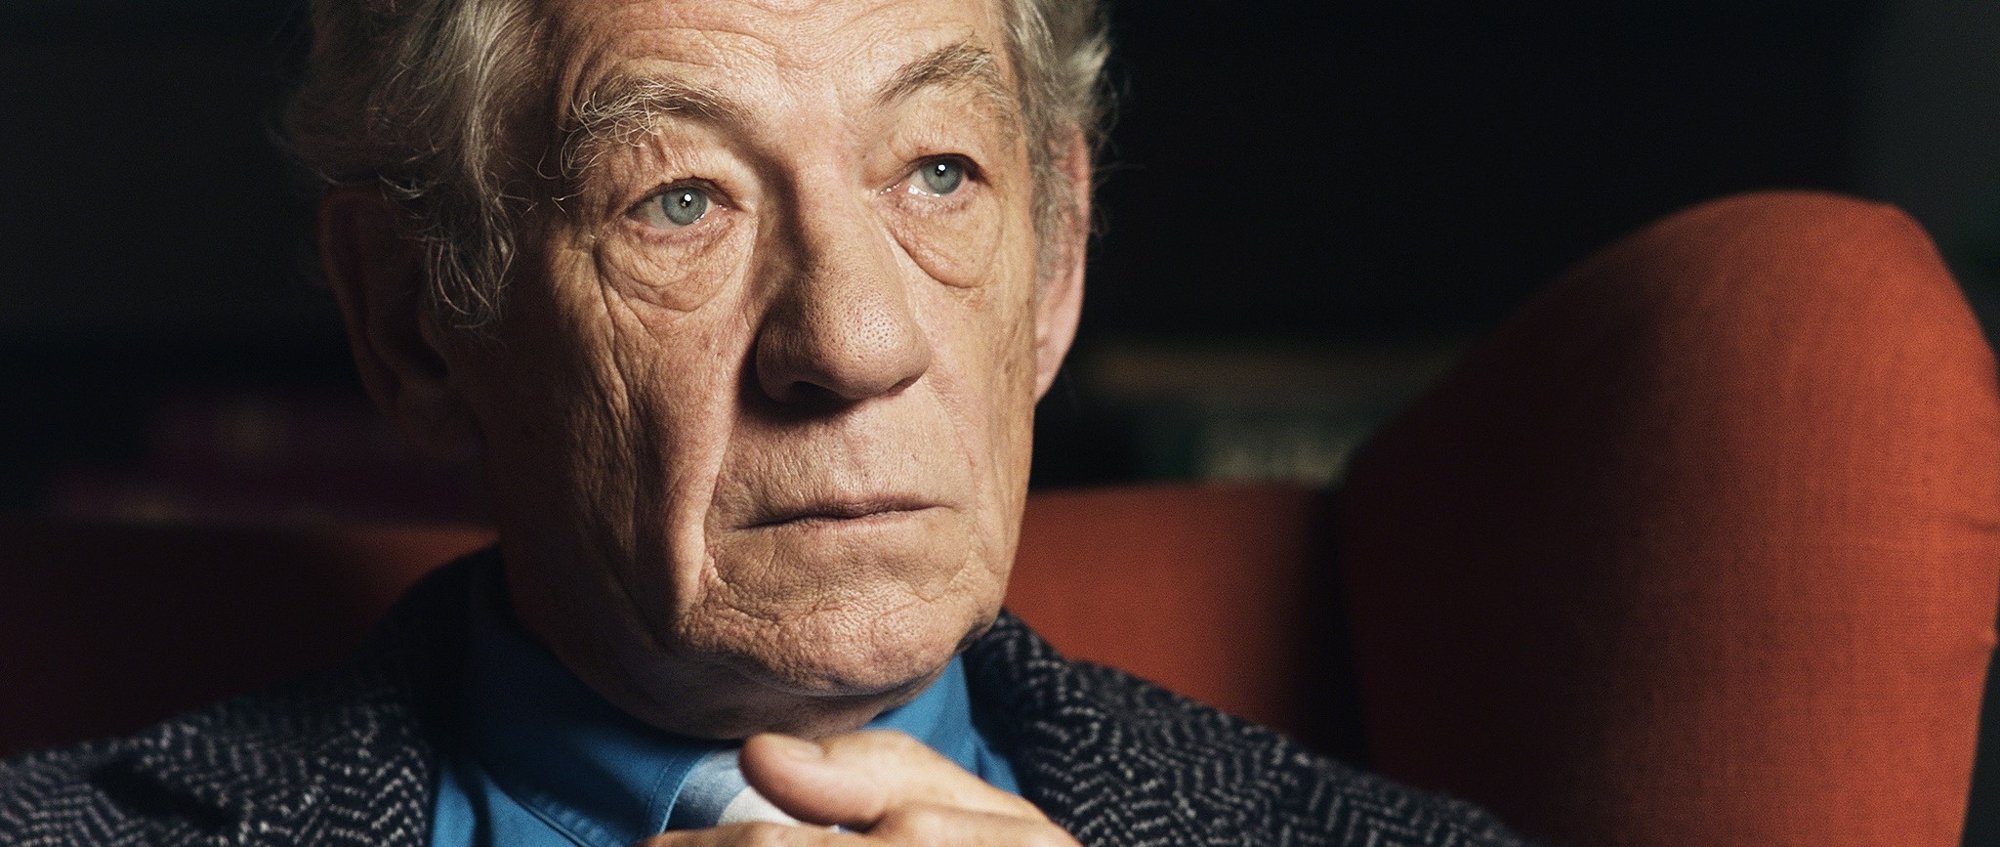 Ian McKellen in Trafalgar Releasing's McKellen: Playing the Part (2018)